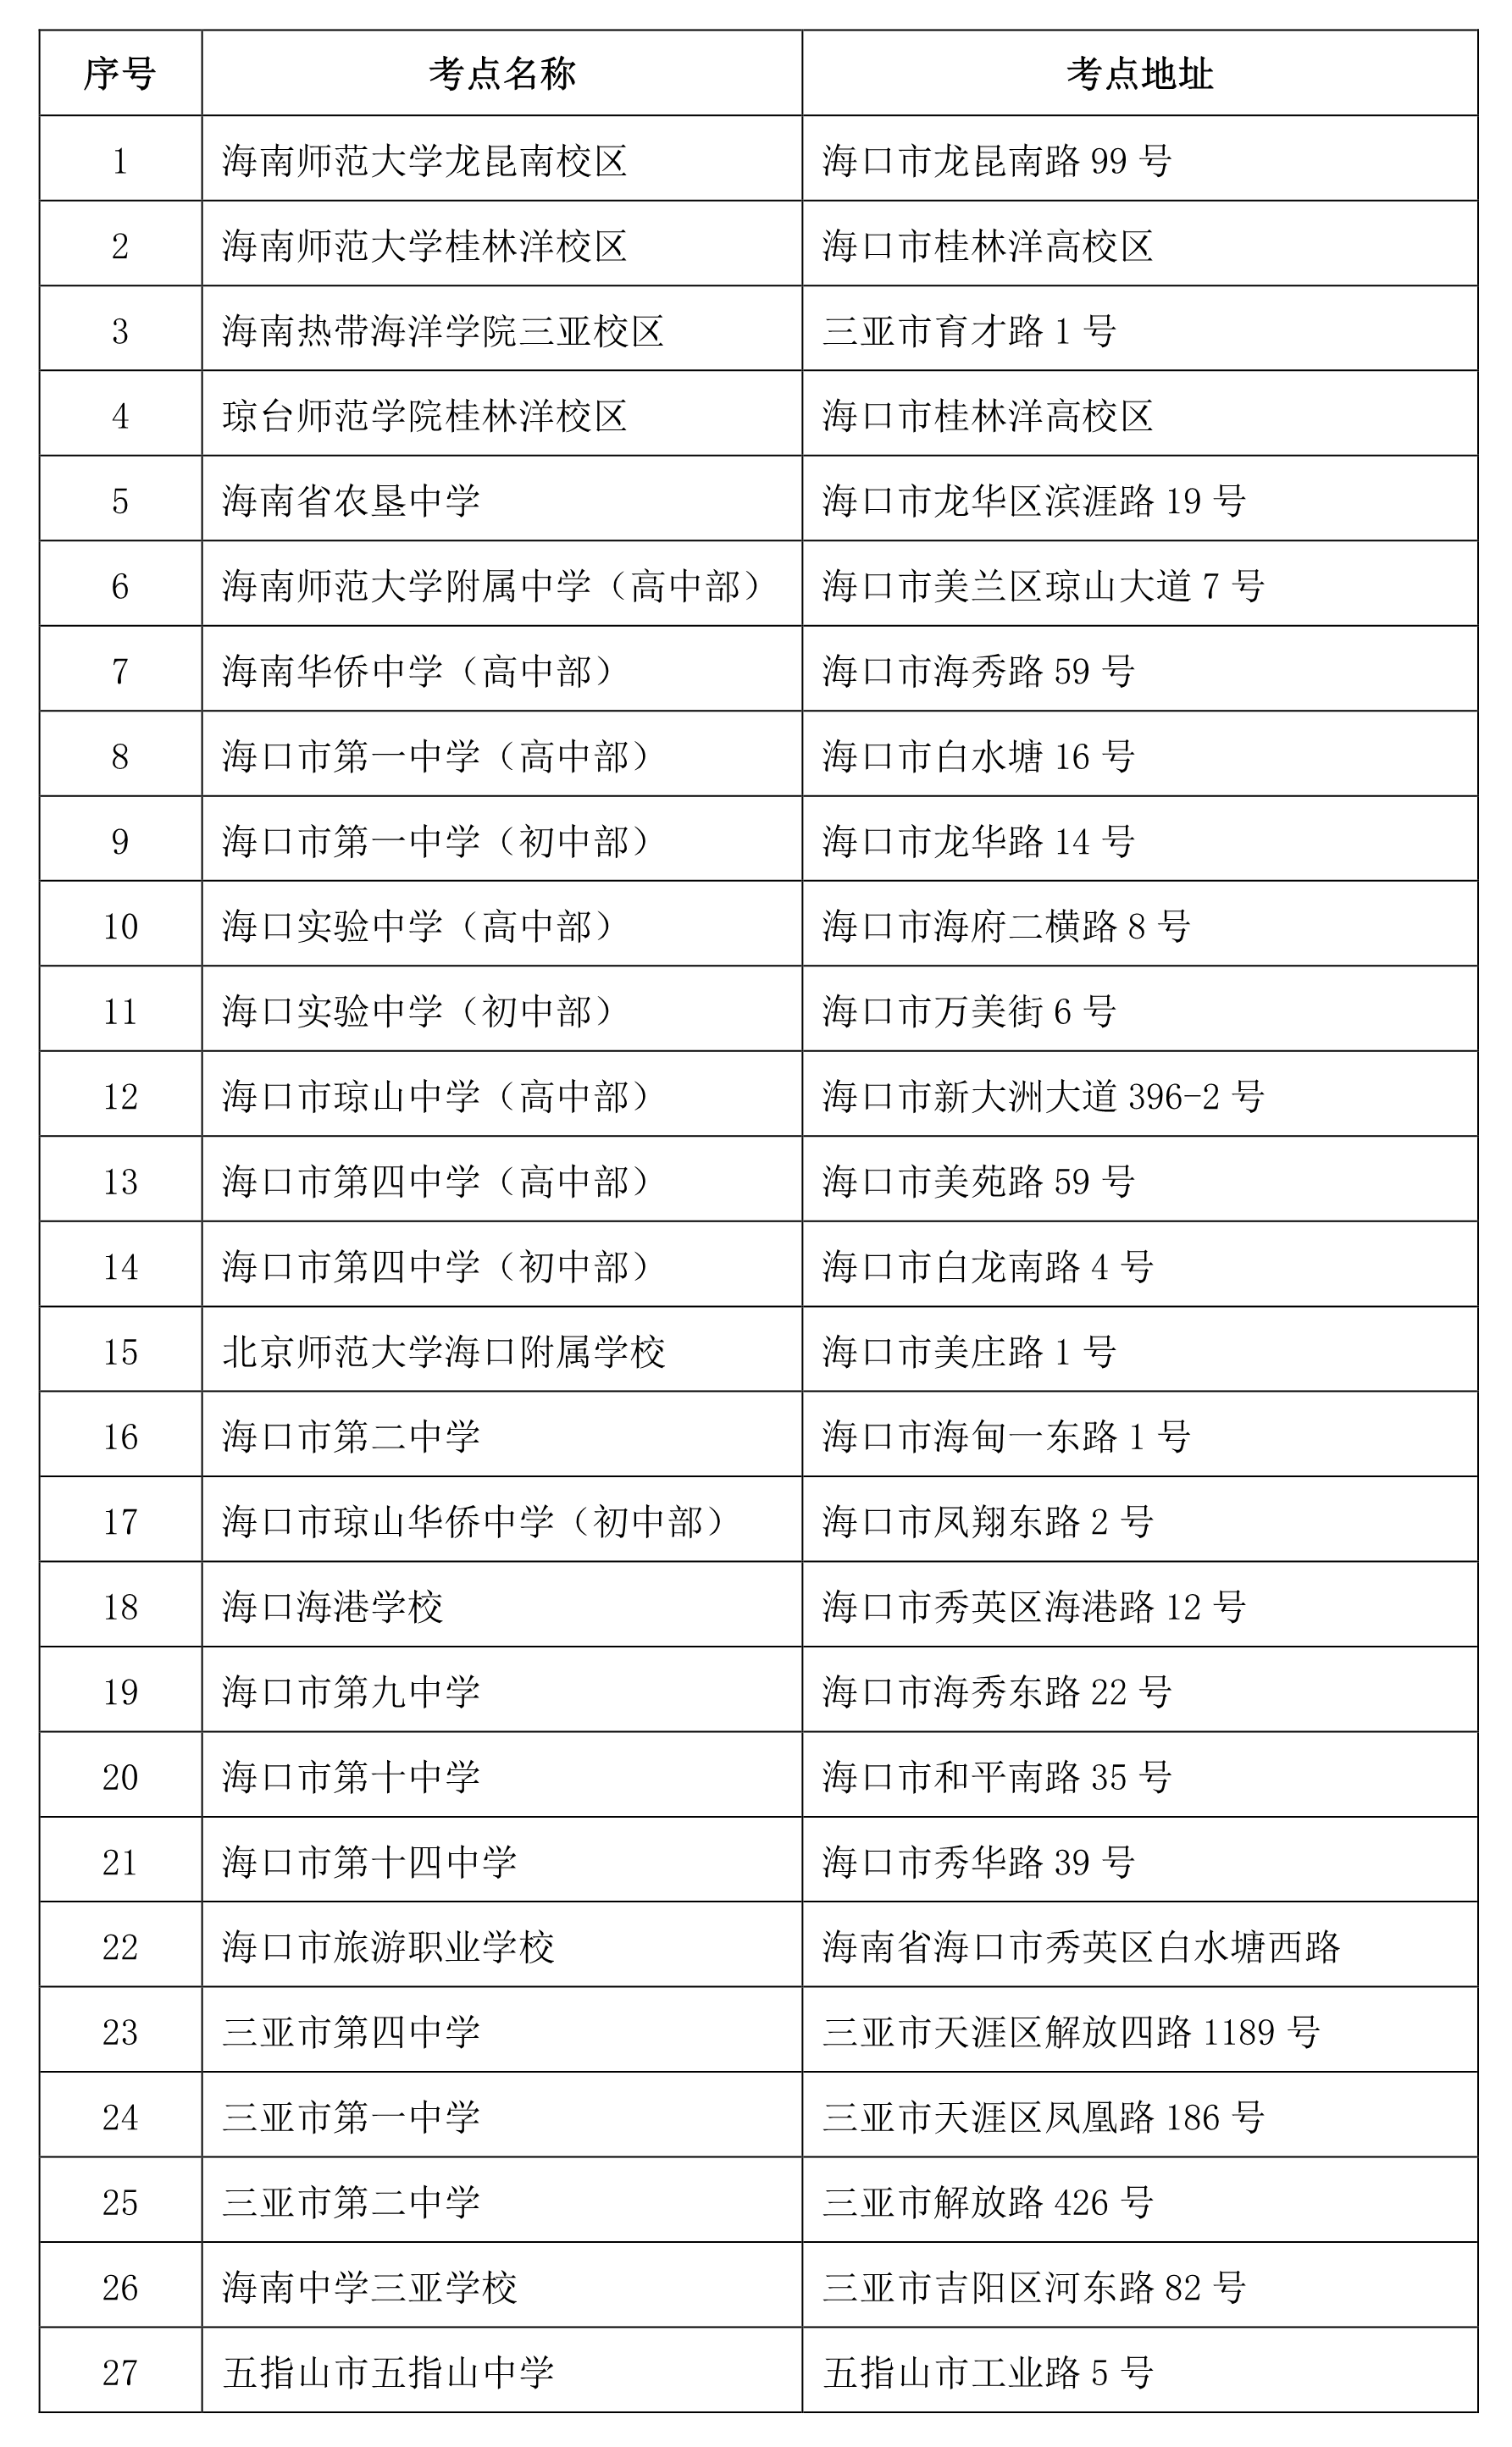 2020海南省中小学教师资格证考点安排 在哪里考试